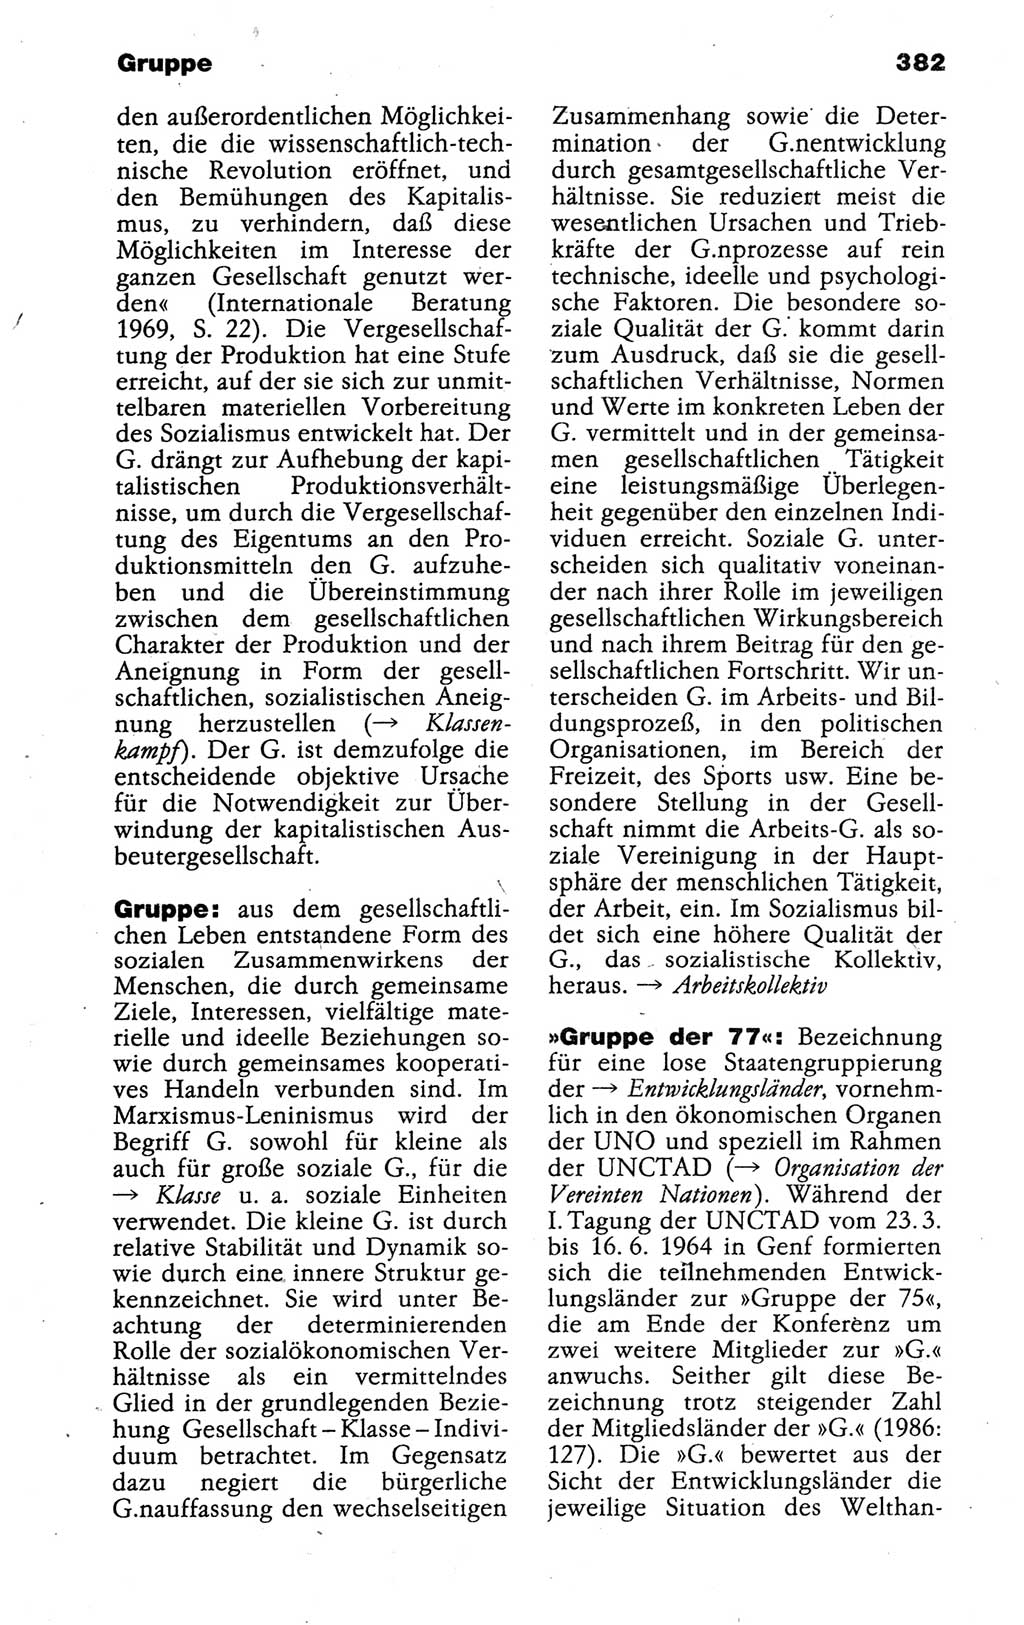 Kleines politisches Wörterbuch [Deutsche Demokratische Republik (DDR)] 1988, Seite 382 (Kl. pol. Wb. DDR 1988, S. 382)